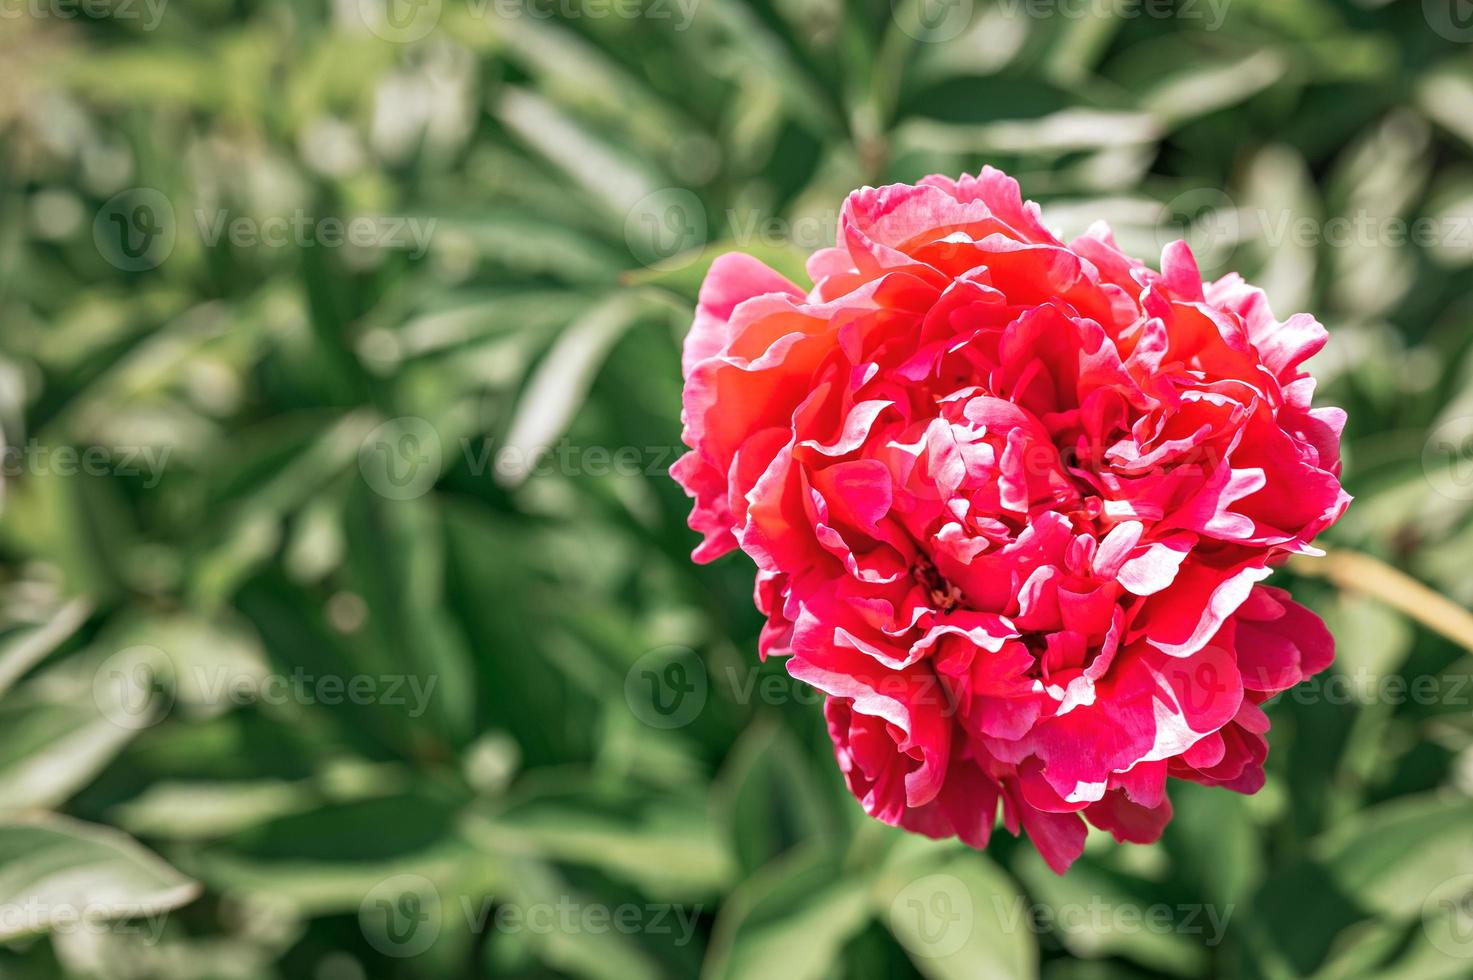 roze pioen bloemhoofd in volle bloei op een achtergrond van vage groene bladeren foto